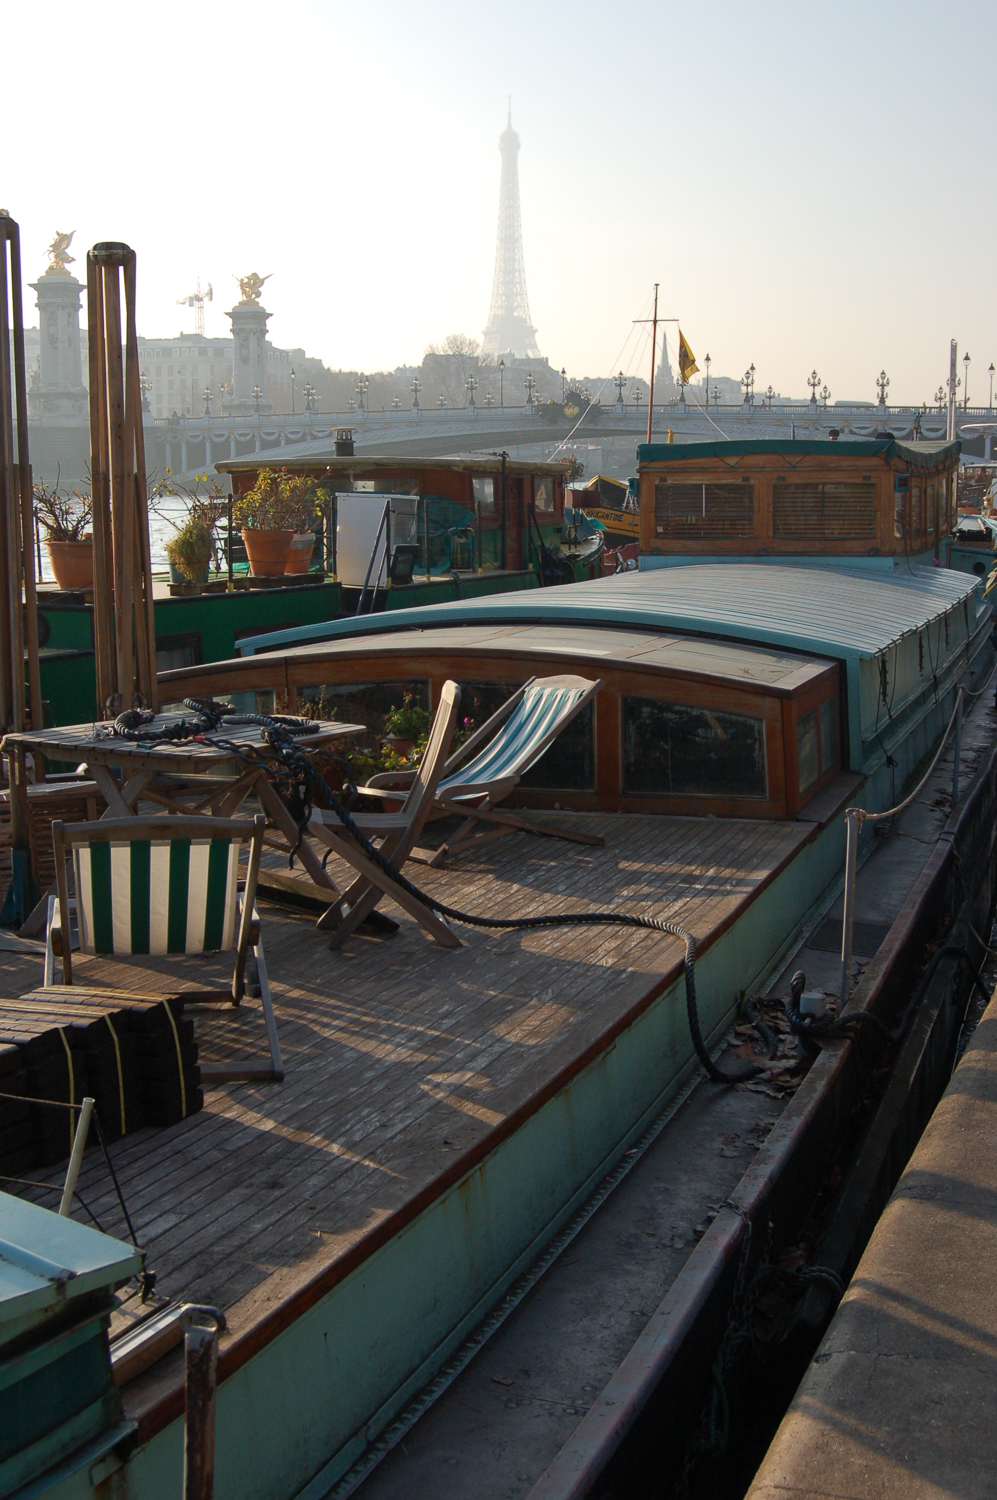 Houseboat, River Seine, Paris